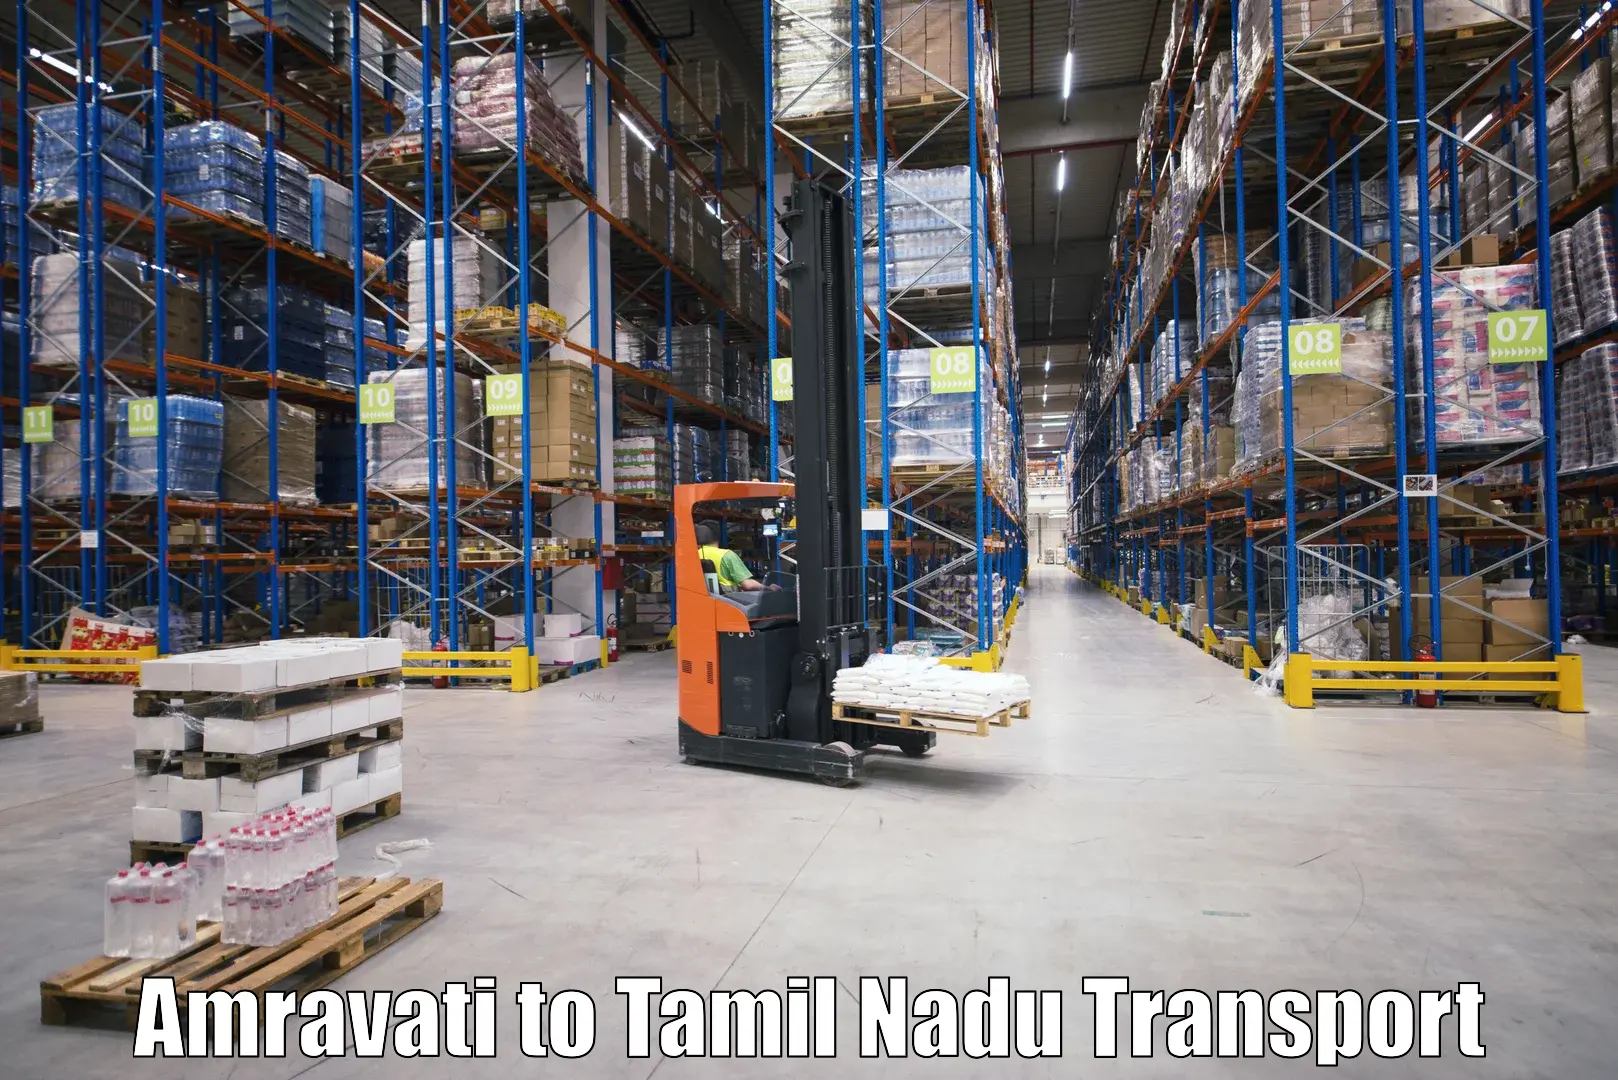 Parcel transport services Amravati to Aruppukkottai